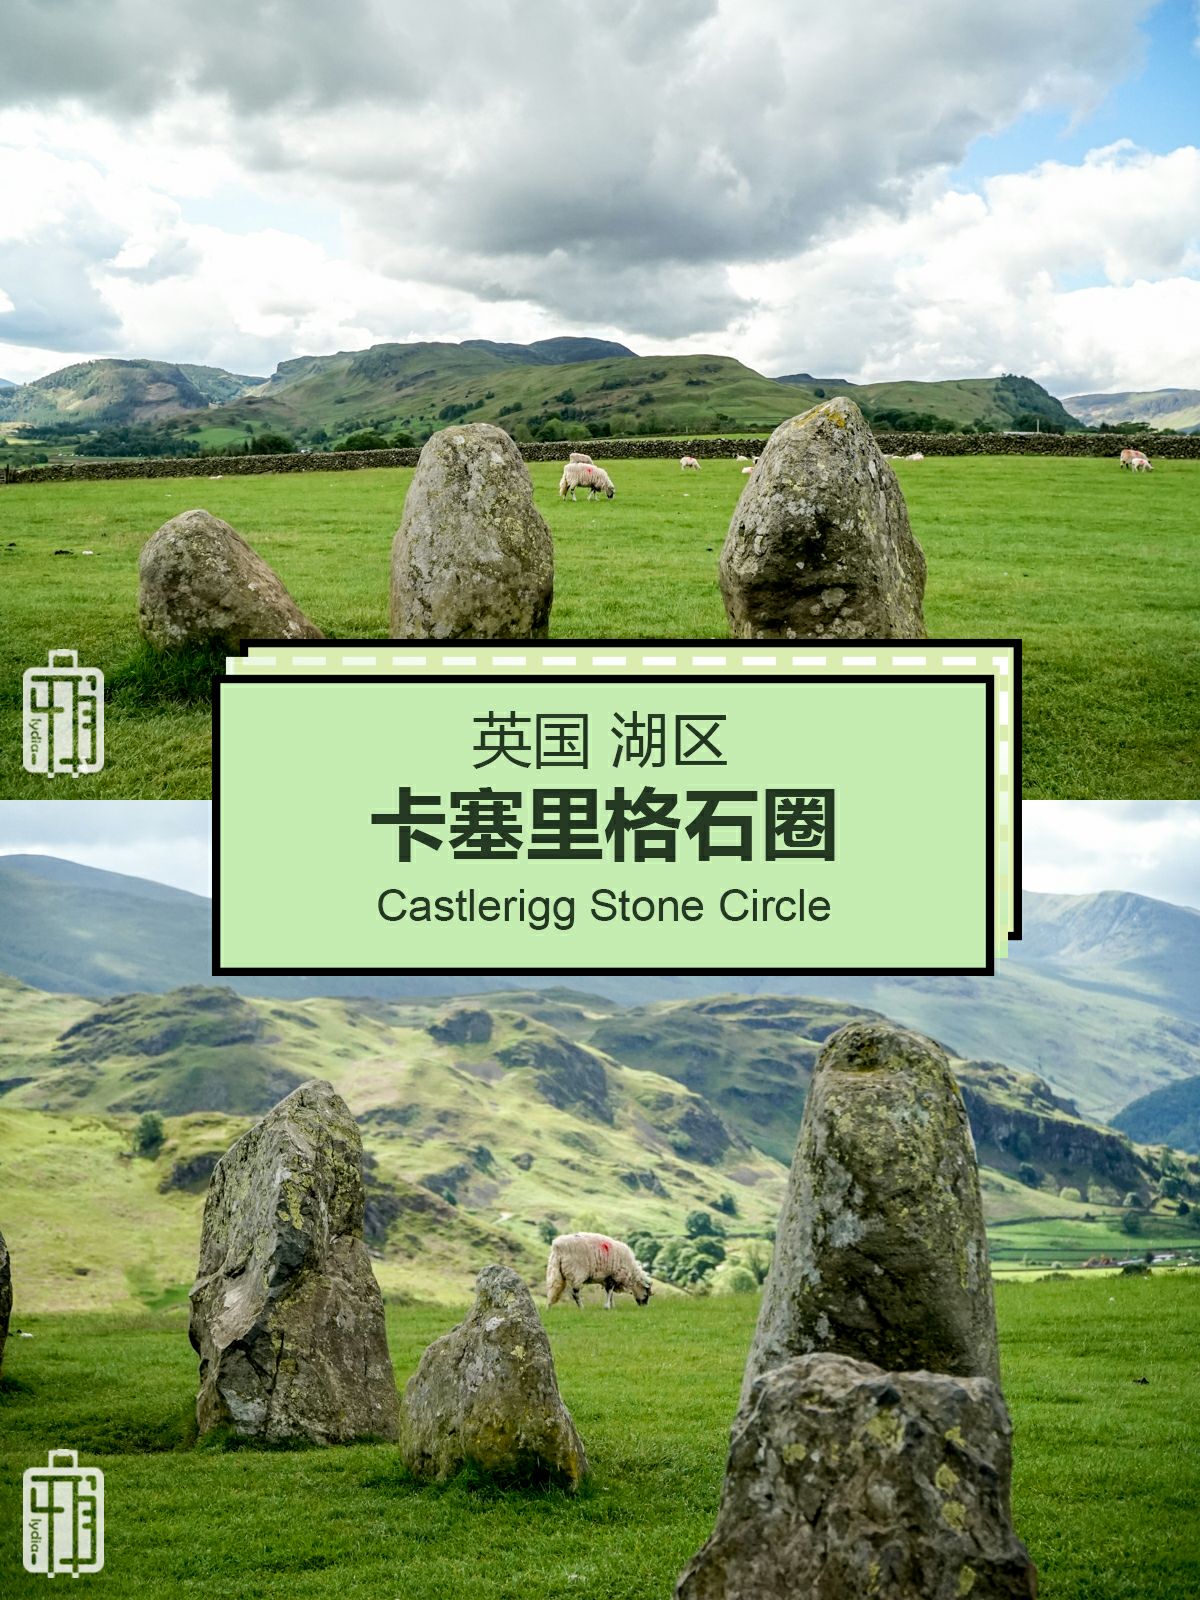 英国湖区的卡塞里格石圈 Castlerigg Stone Circle  英国初次自驾旅途来到英国湖